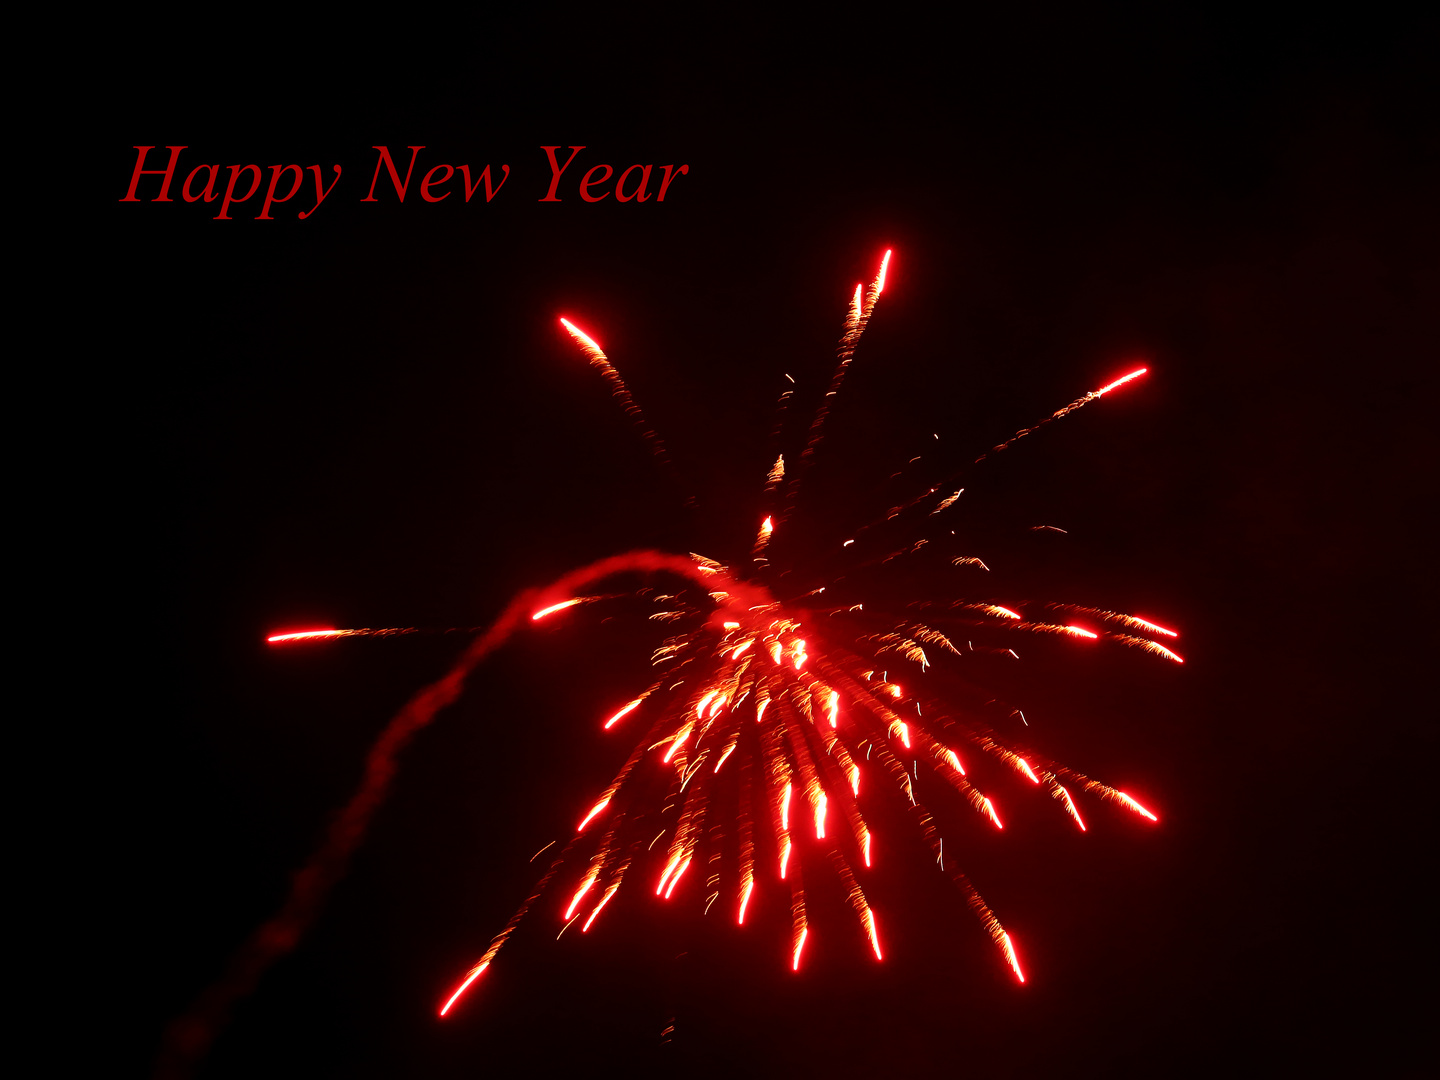 Allen ein frohes und erfolgreiches 2014!